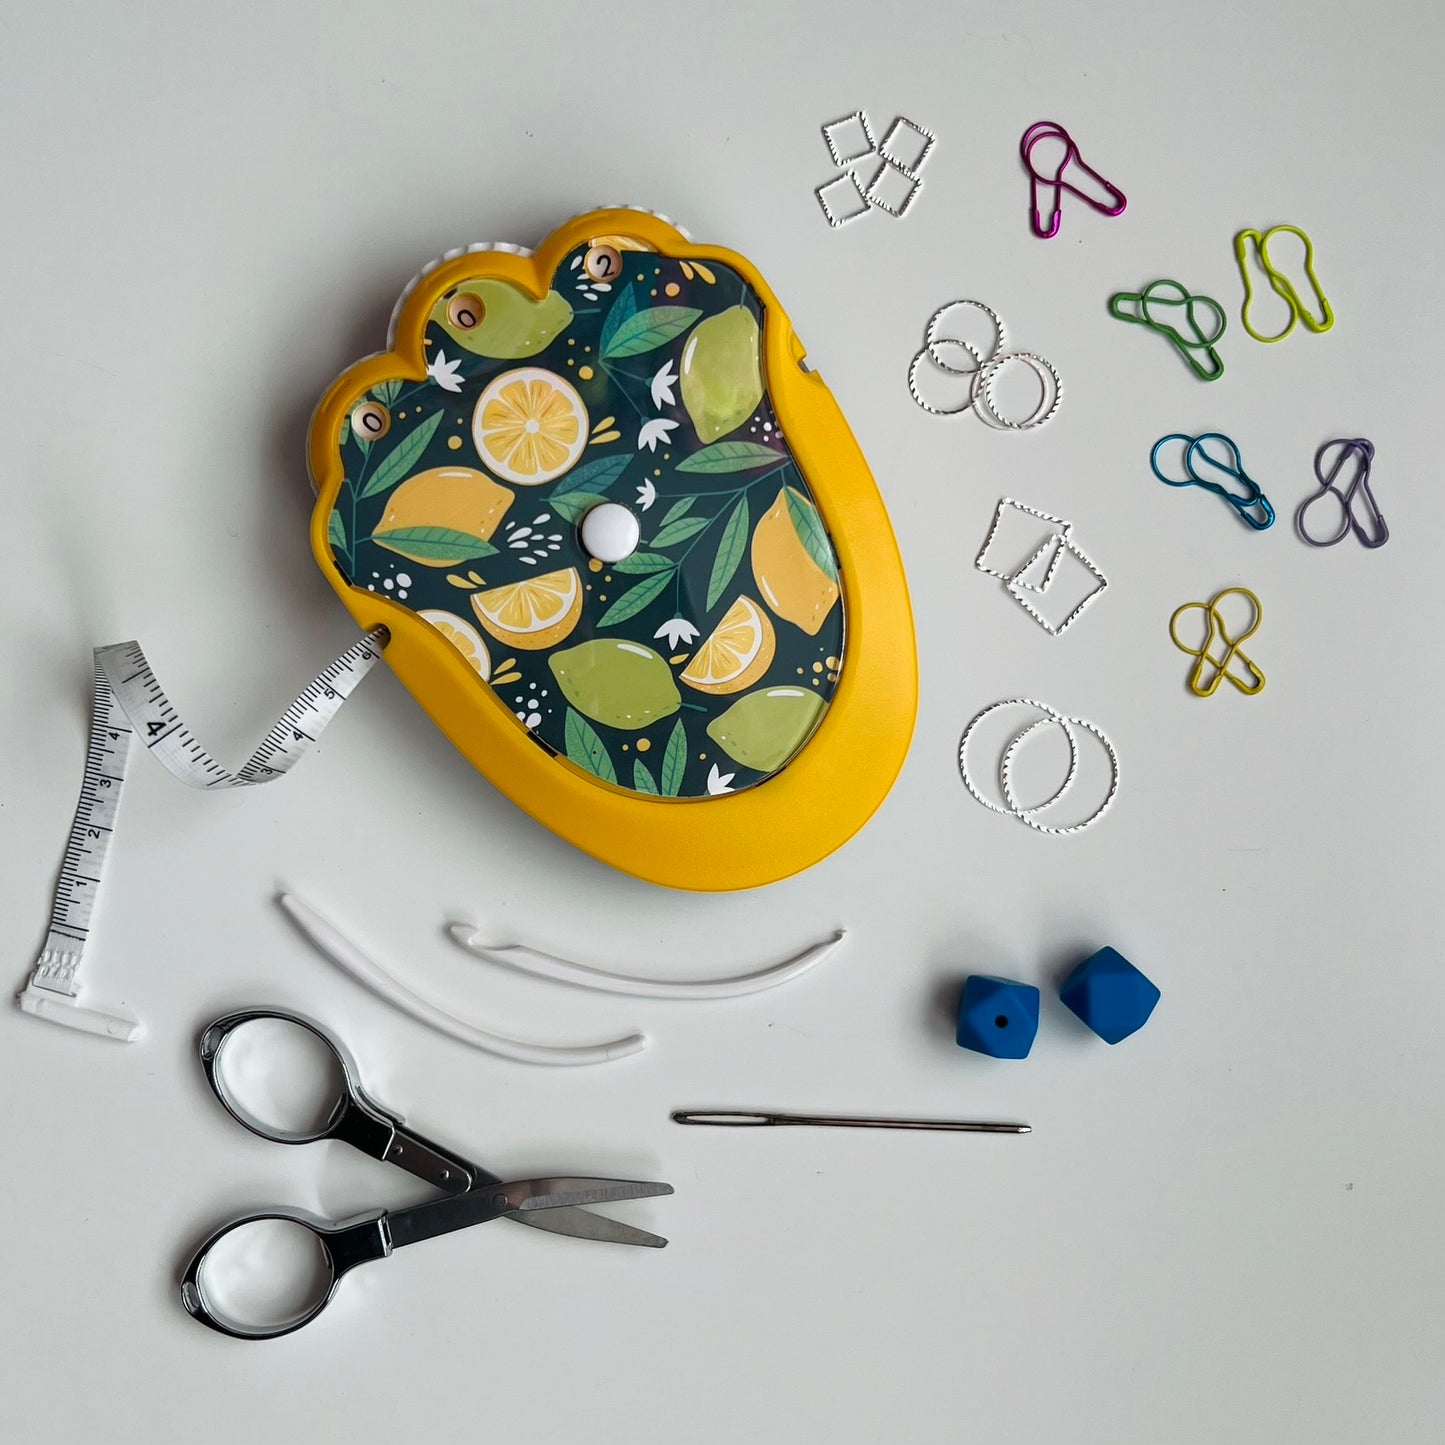 The Knit & Crochet Kit - Knitting & Crochet Tool Kit - Lemons & Limes